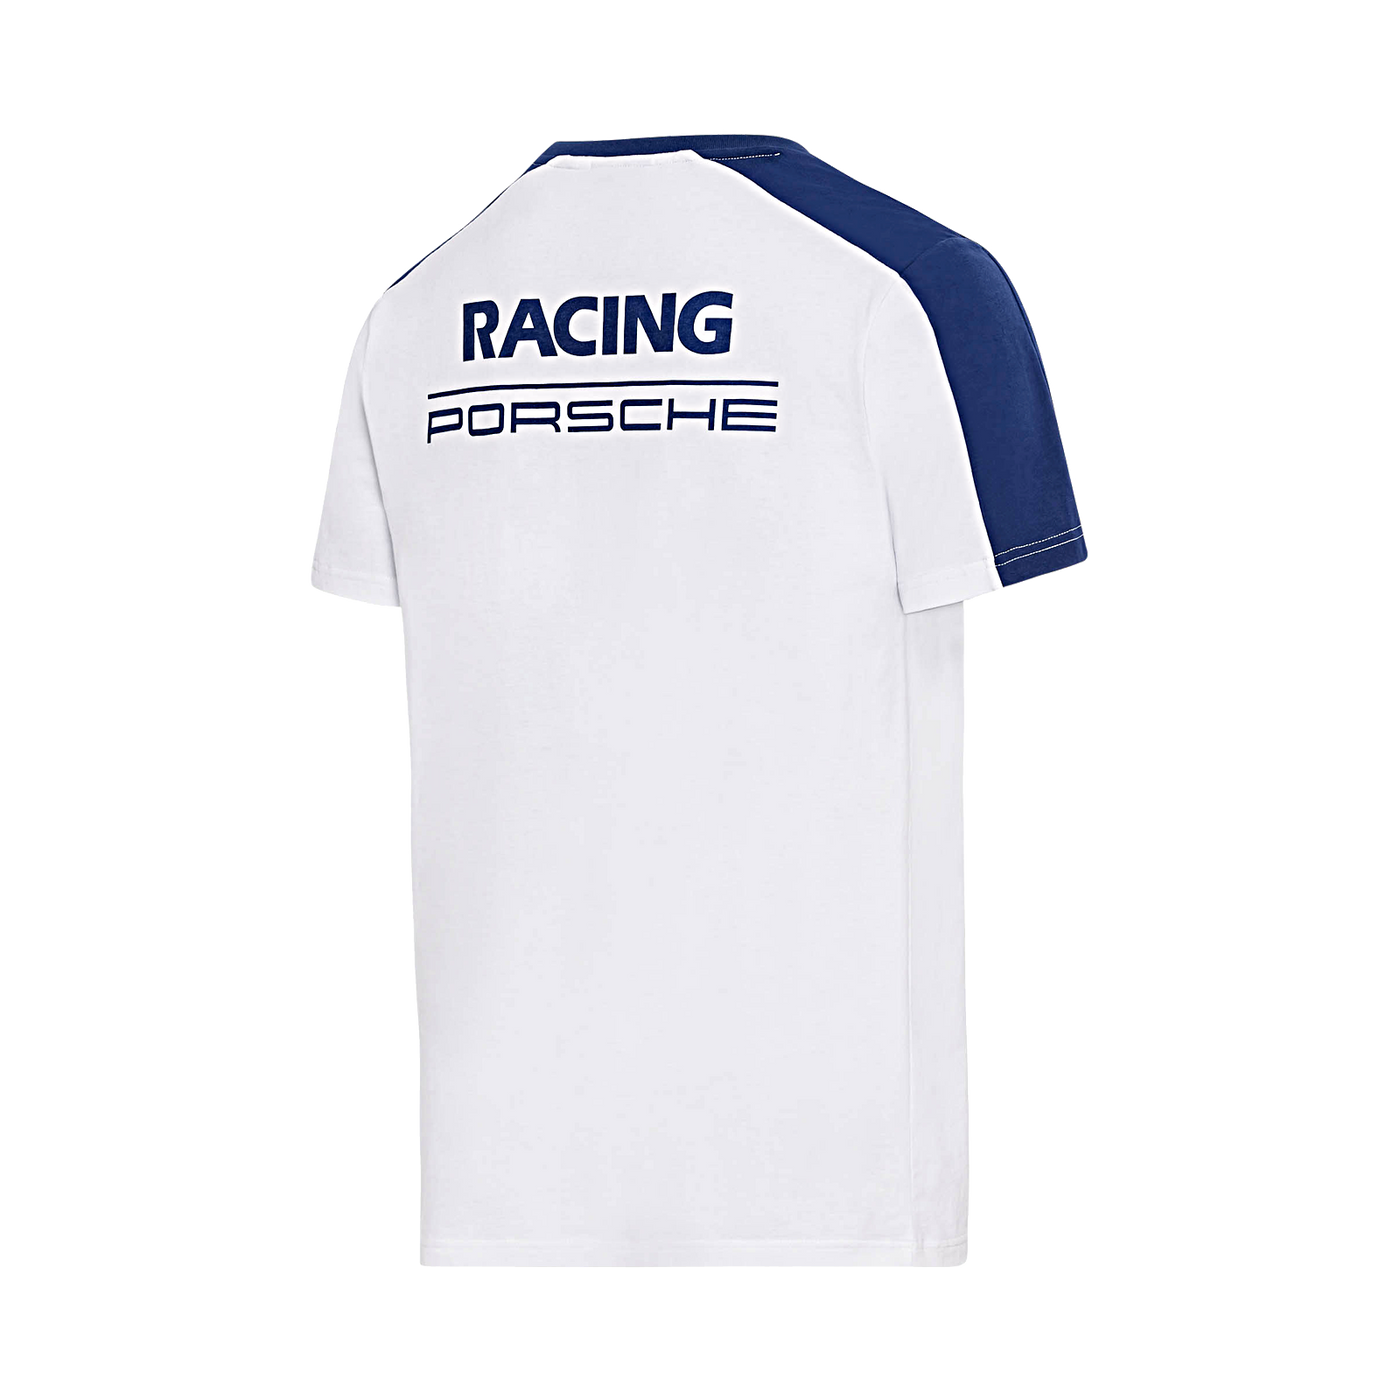 Porsche Mens T-Shirt - Racing (Rothmans)